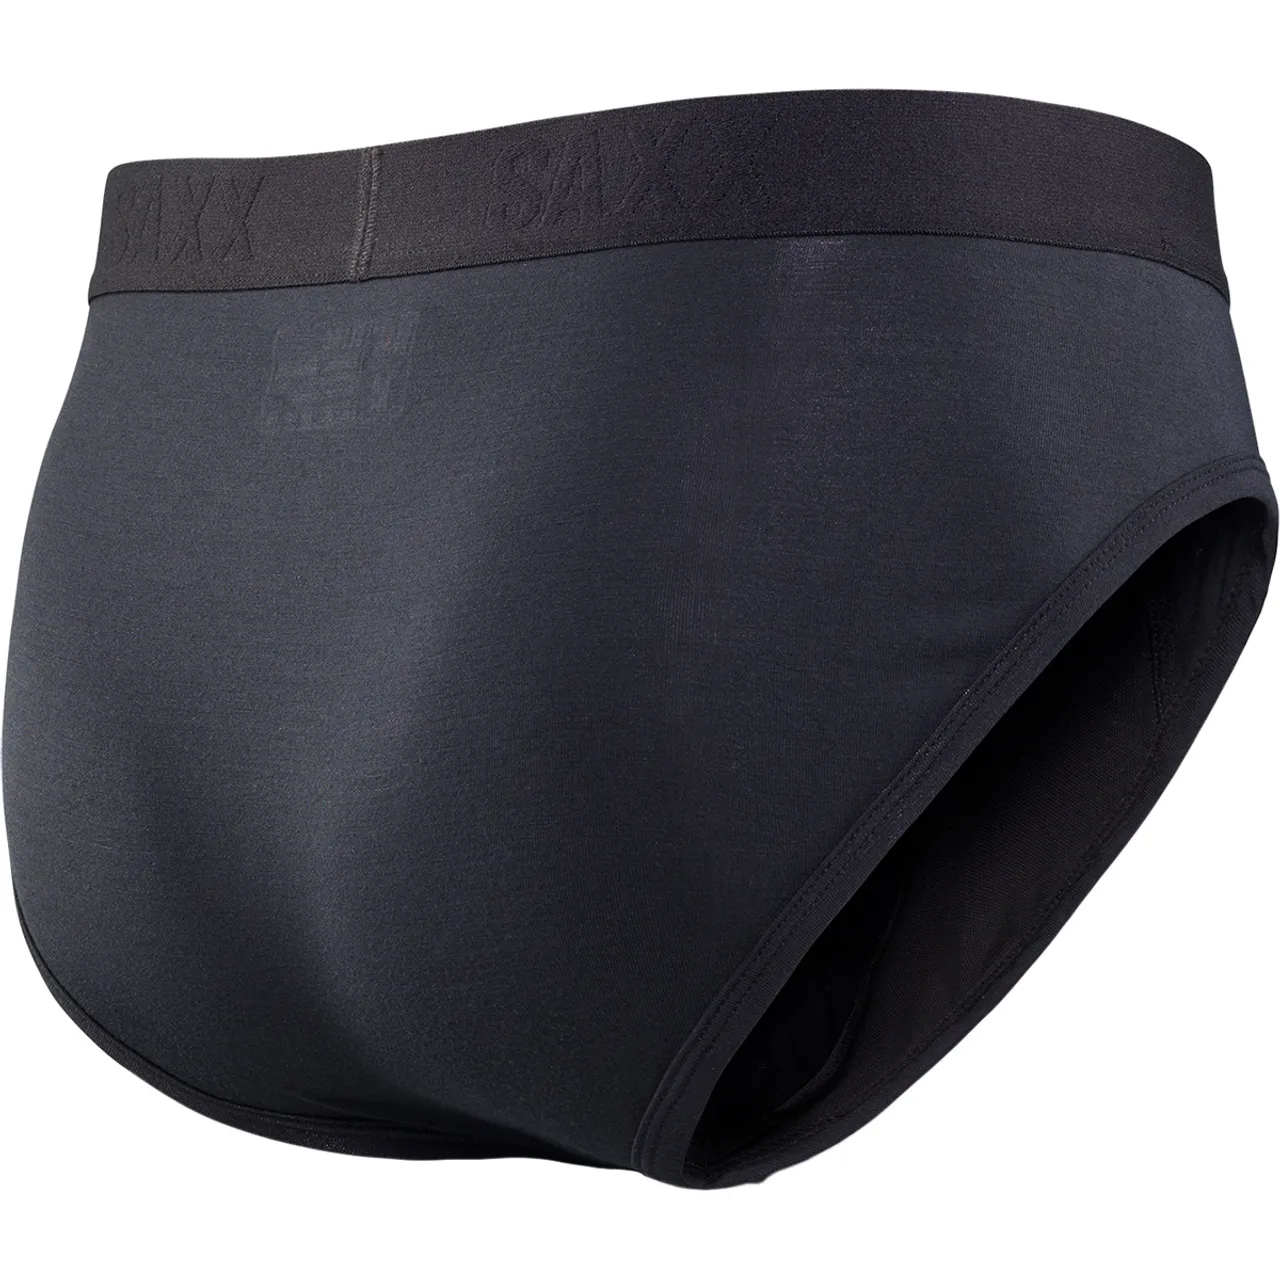 Saxx Underwear Herren Ultra Brief Fly Unterhose